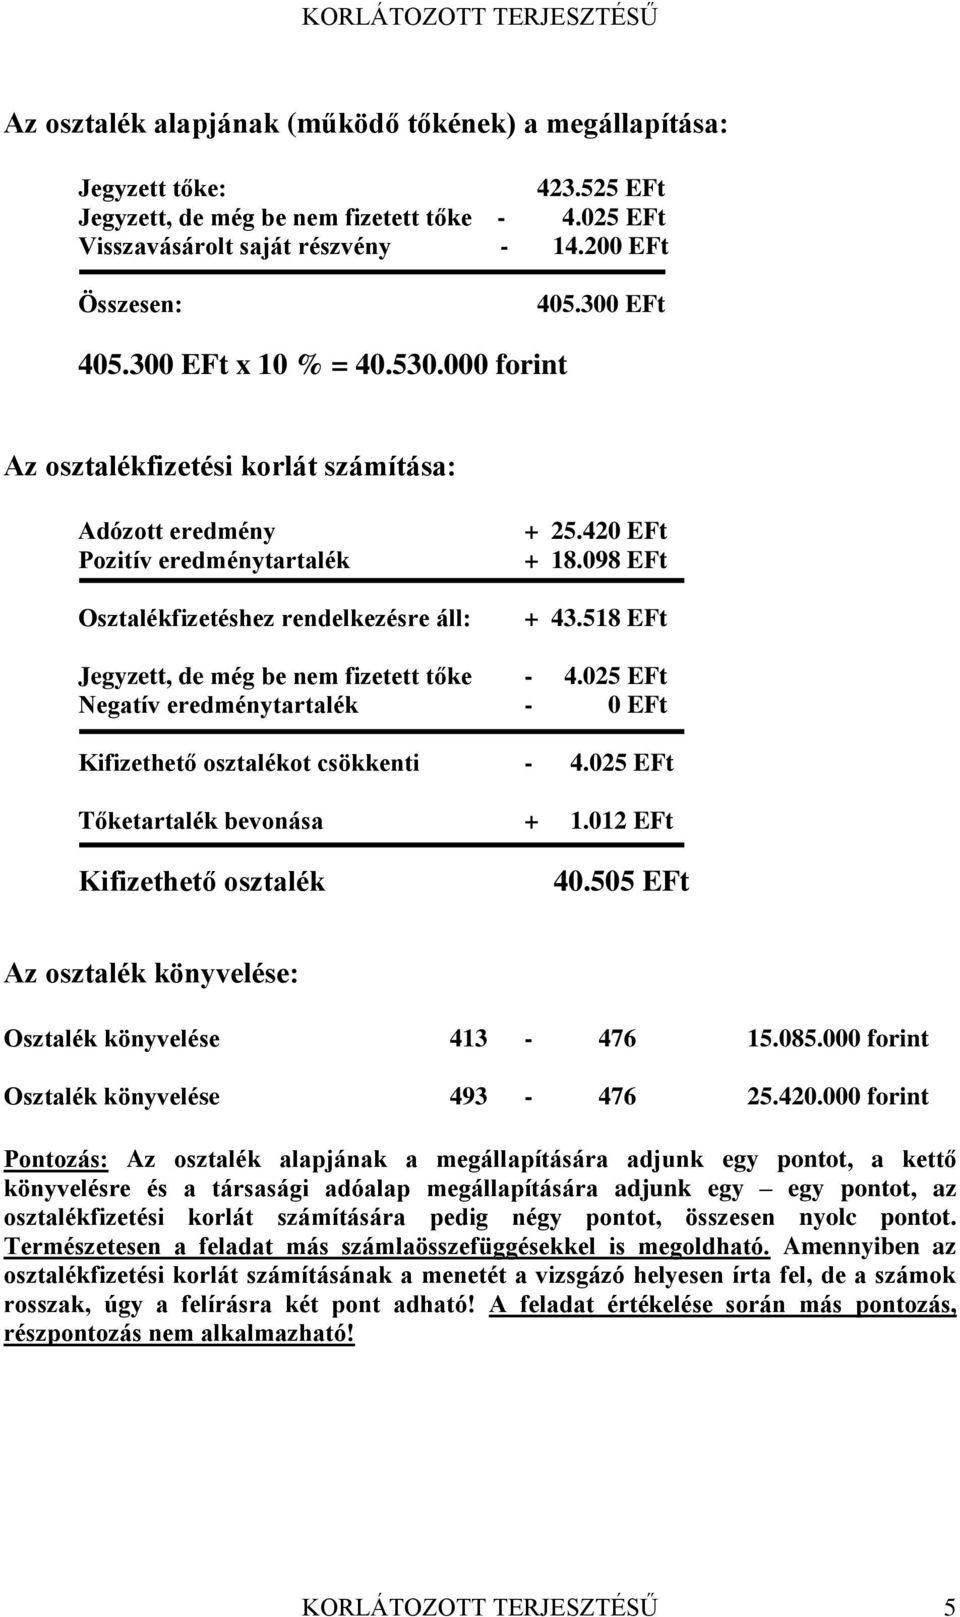 518 EFt Jegyzett, de még be nem fizetett tőke - 4.025 EFt Negatív eredménytartalék - 0 EFt Kifizethető osztalékot csökkenti - 4.025 EFt Tőketartalék bevonása + 1.012 EFt Kifizethető osztalék 40.